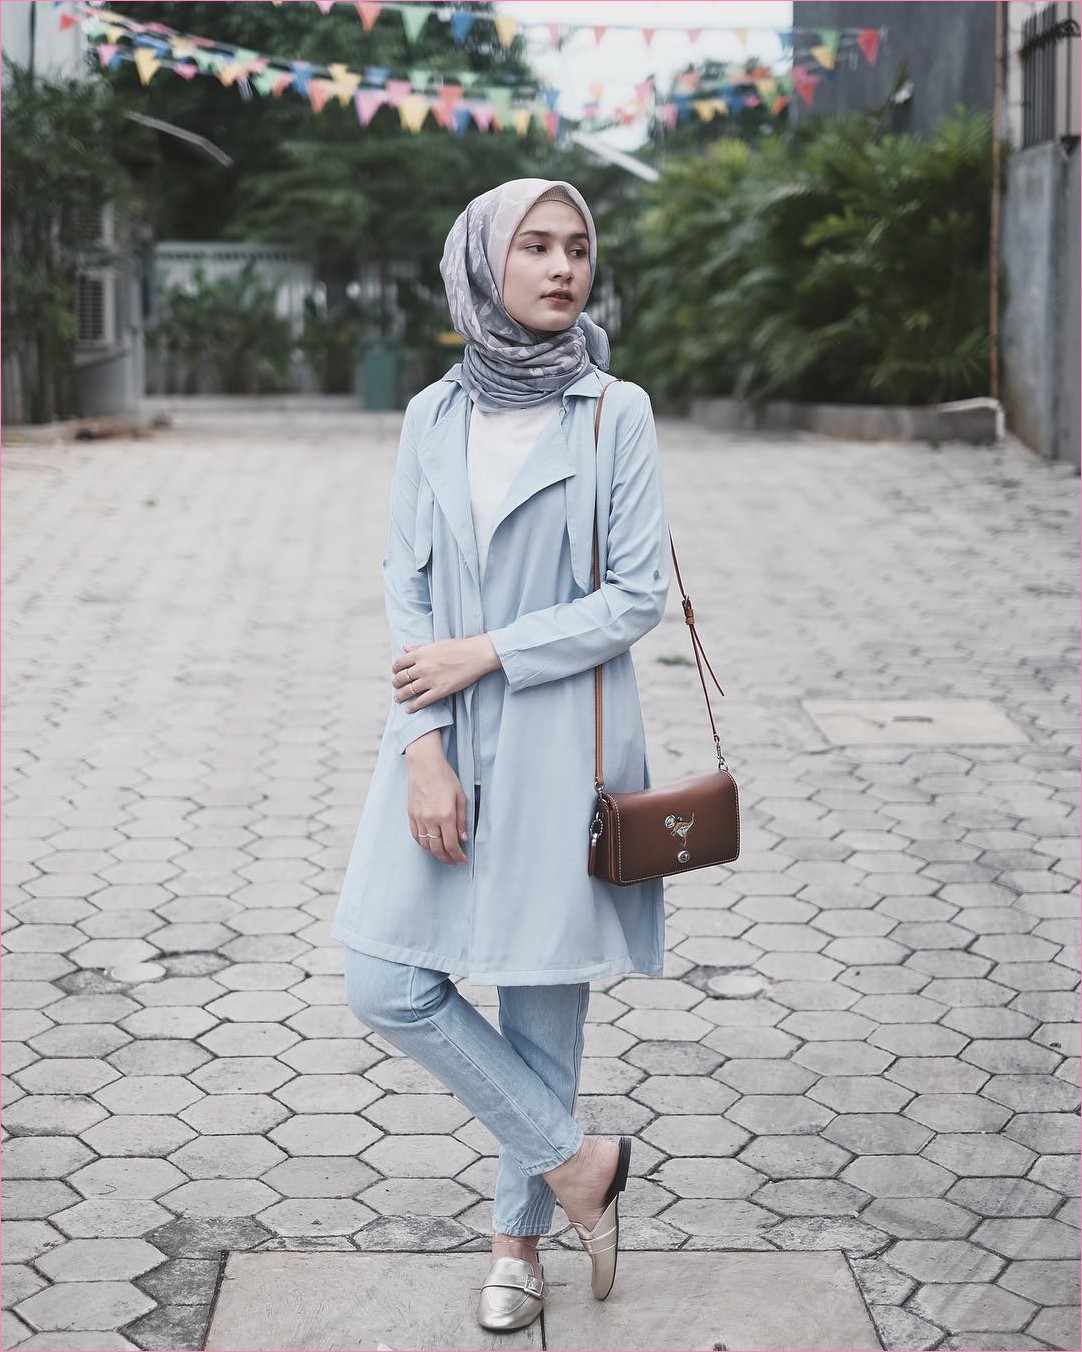 Outfit Baju  Hijab  Casual  Untuk Ke Kantor Ala Selebgam 2019